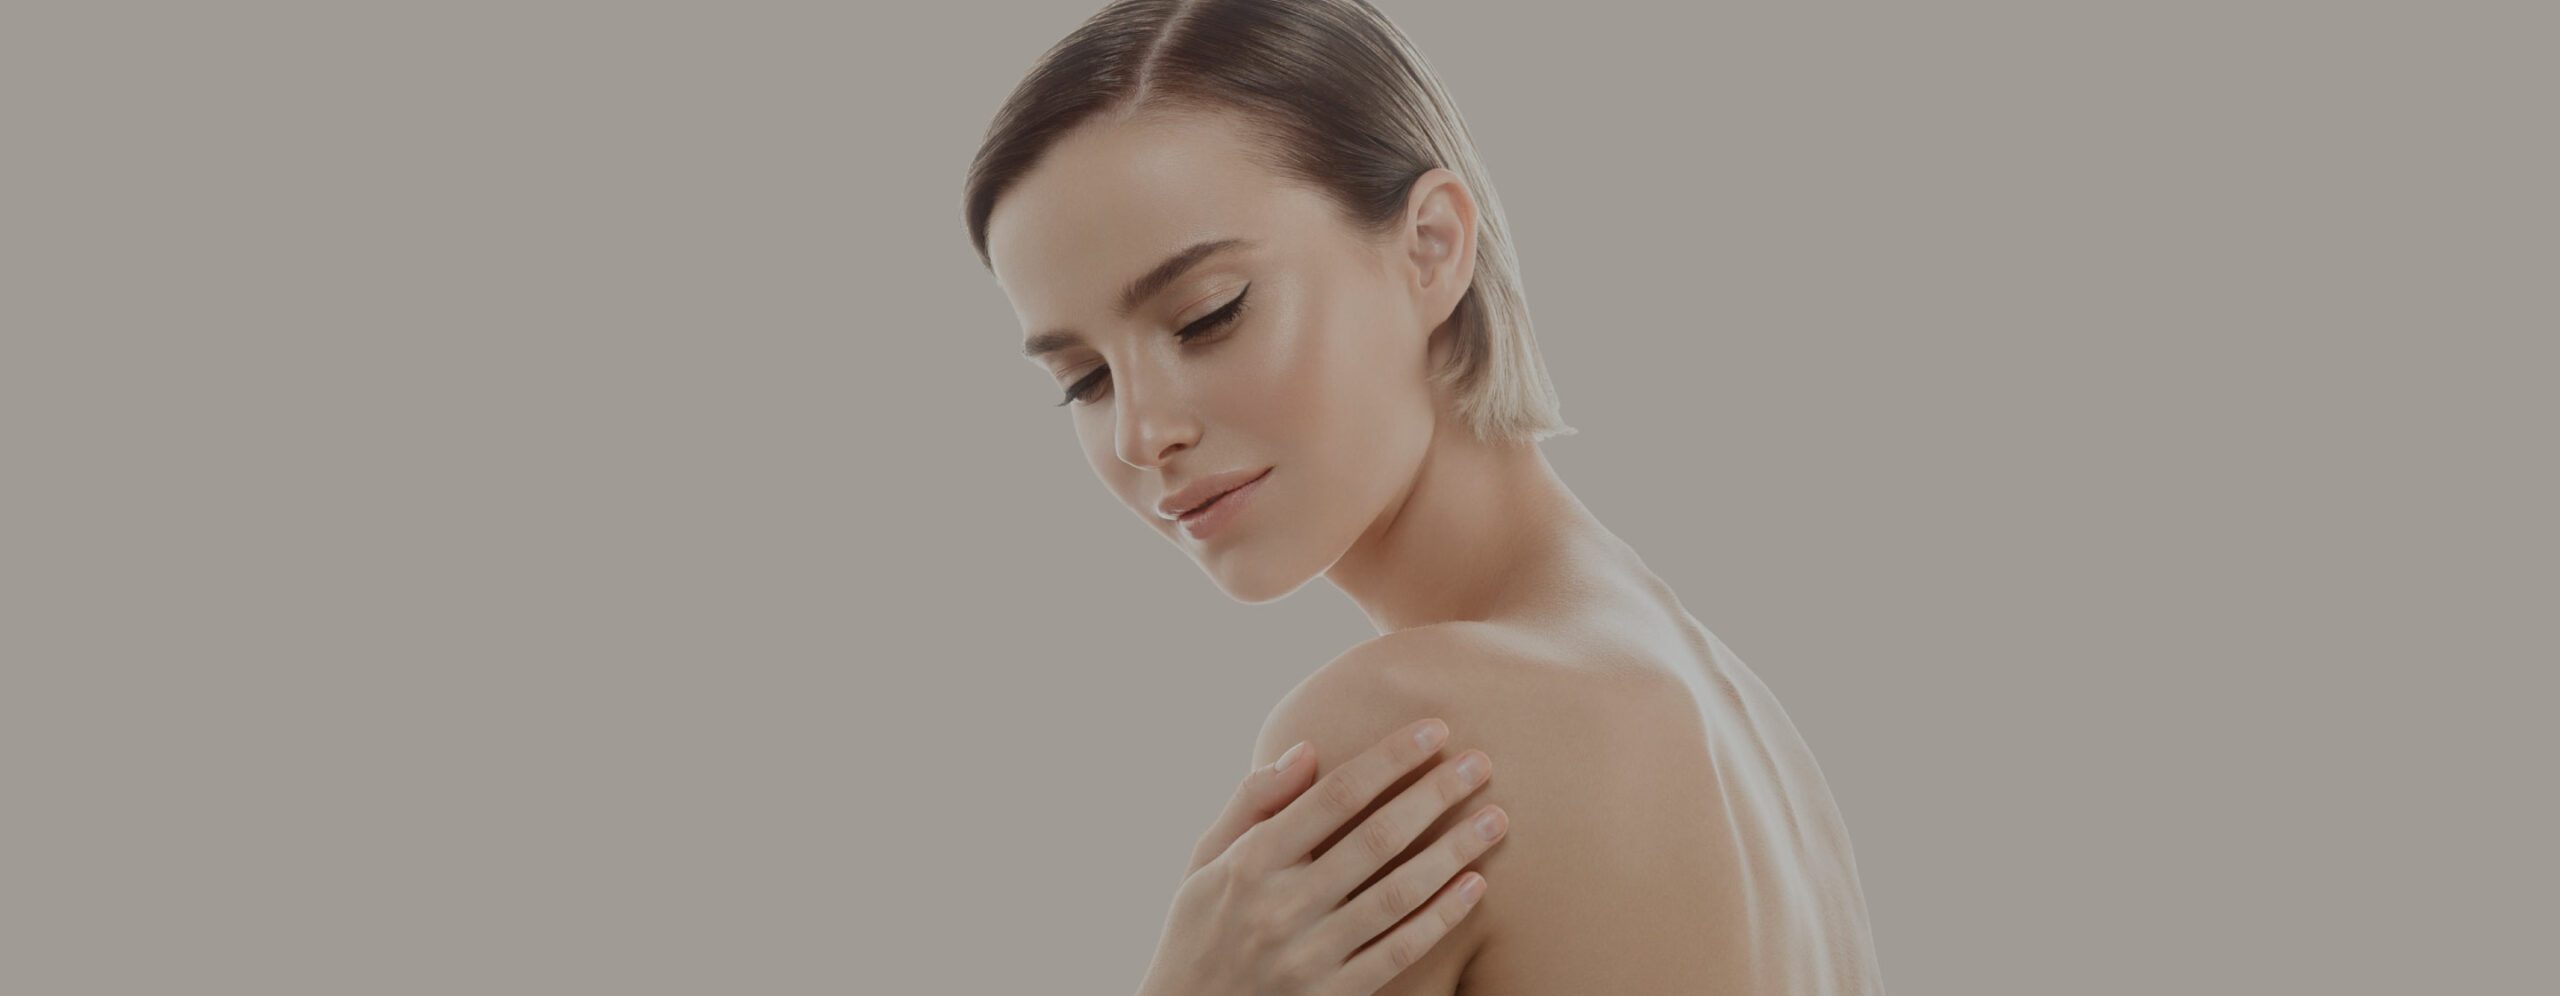 Cómo cuidar la piel después de la depilación láser en diferentes zonas del cuerpo